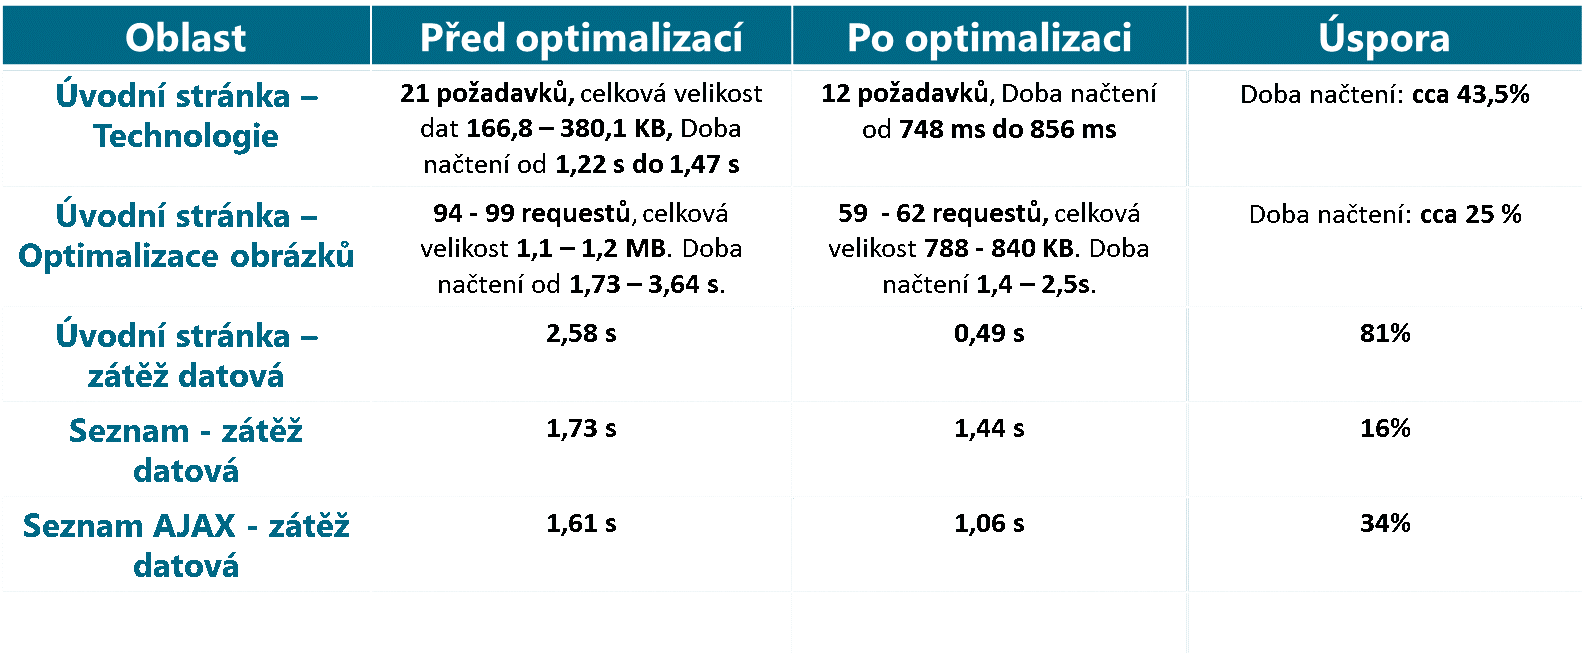 Optimalizace B2B portálu poháněném Interlinkem